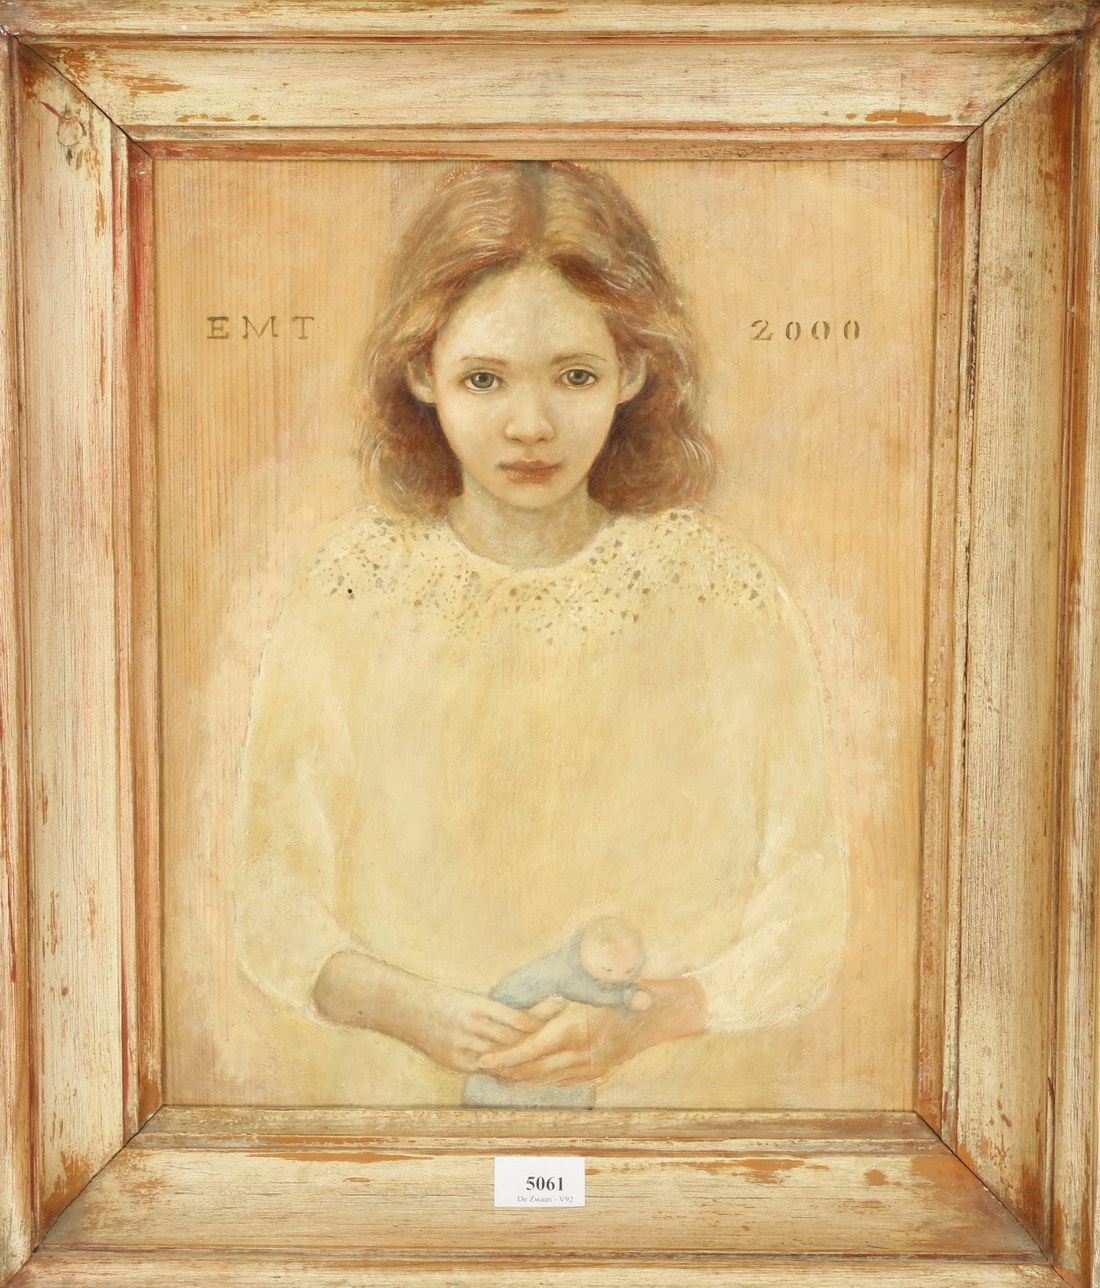 Portret meisje by Ellis Tertoolen, 2000